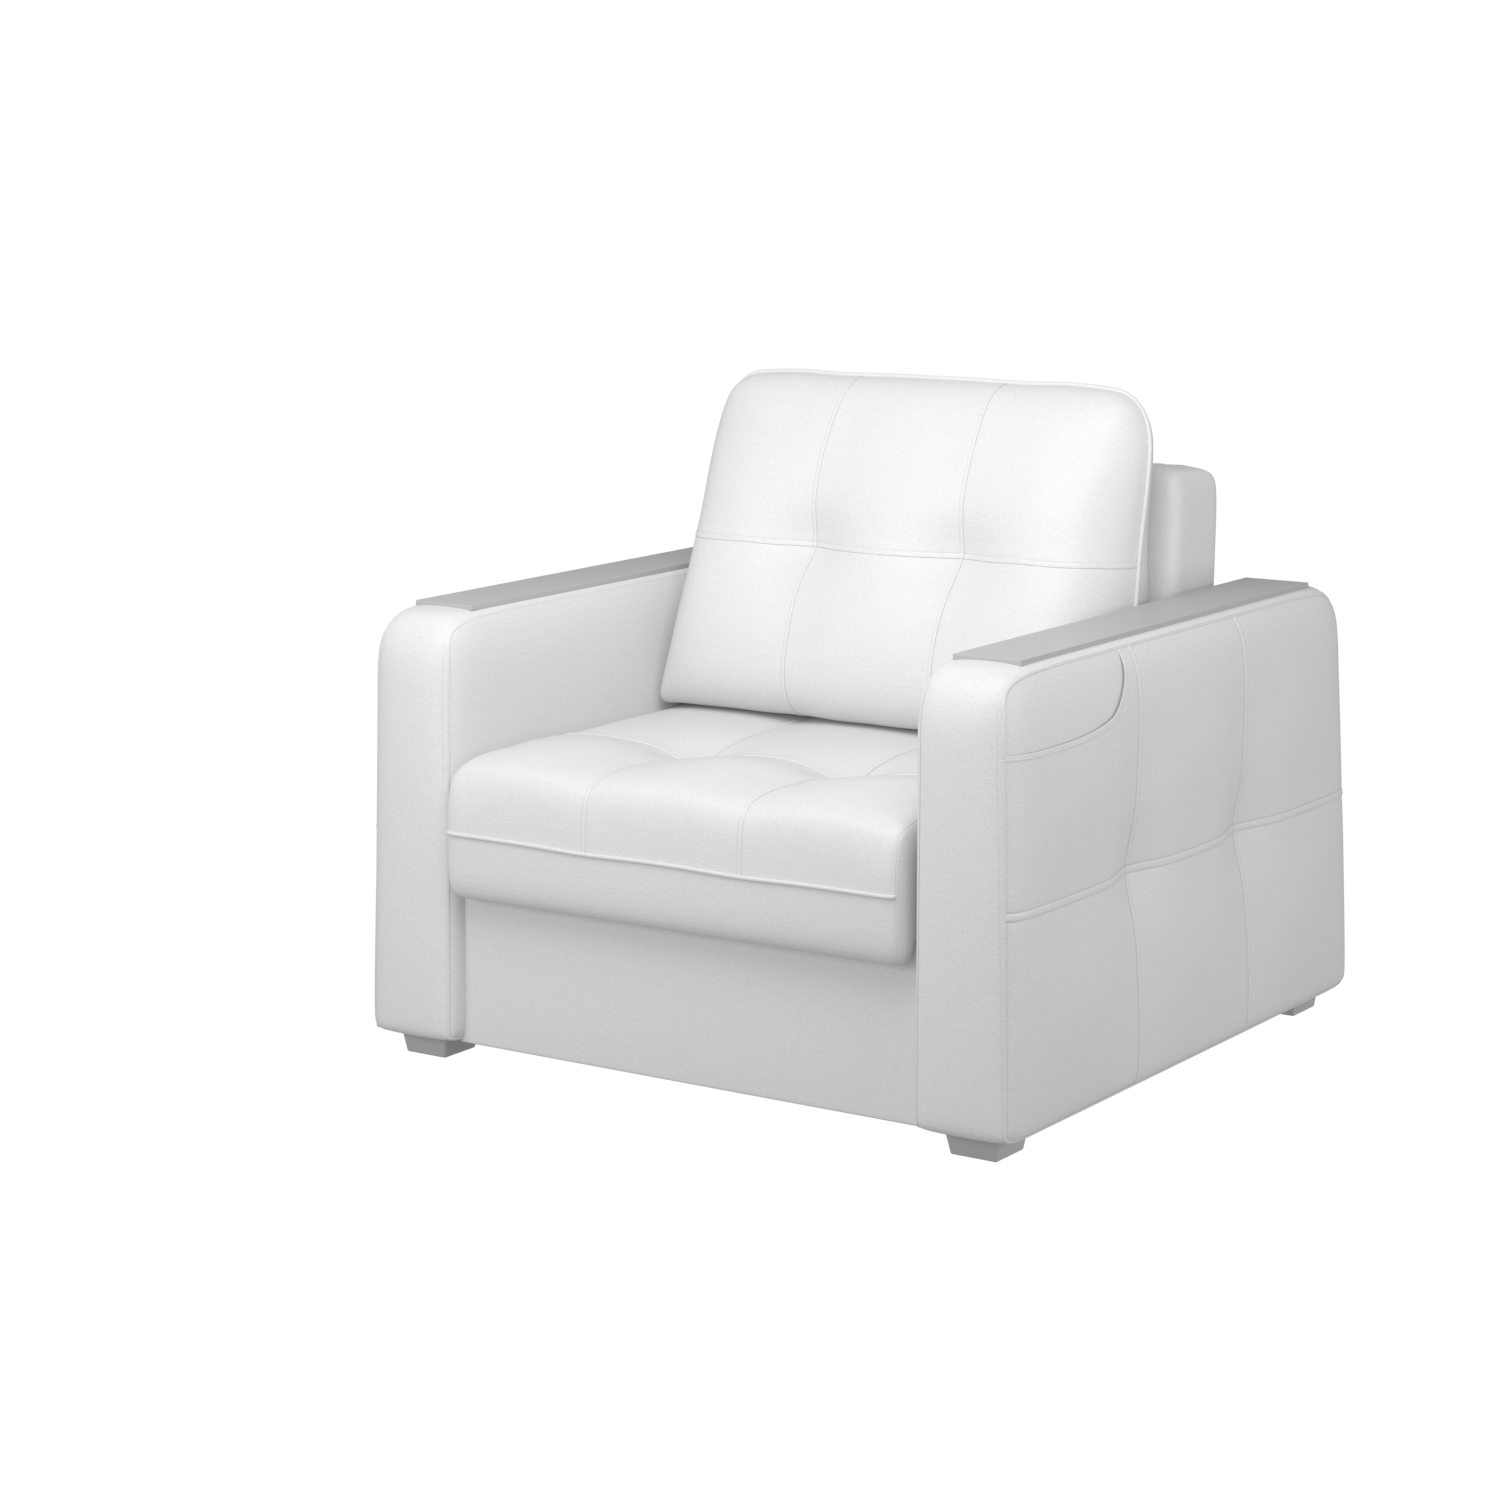 Мягкое кресло с ящиком Киль-3, кКЛ01.кш135.135у